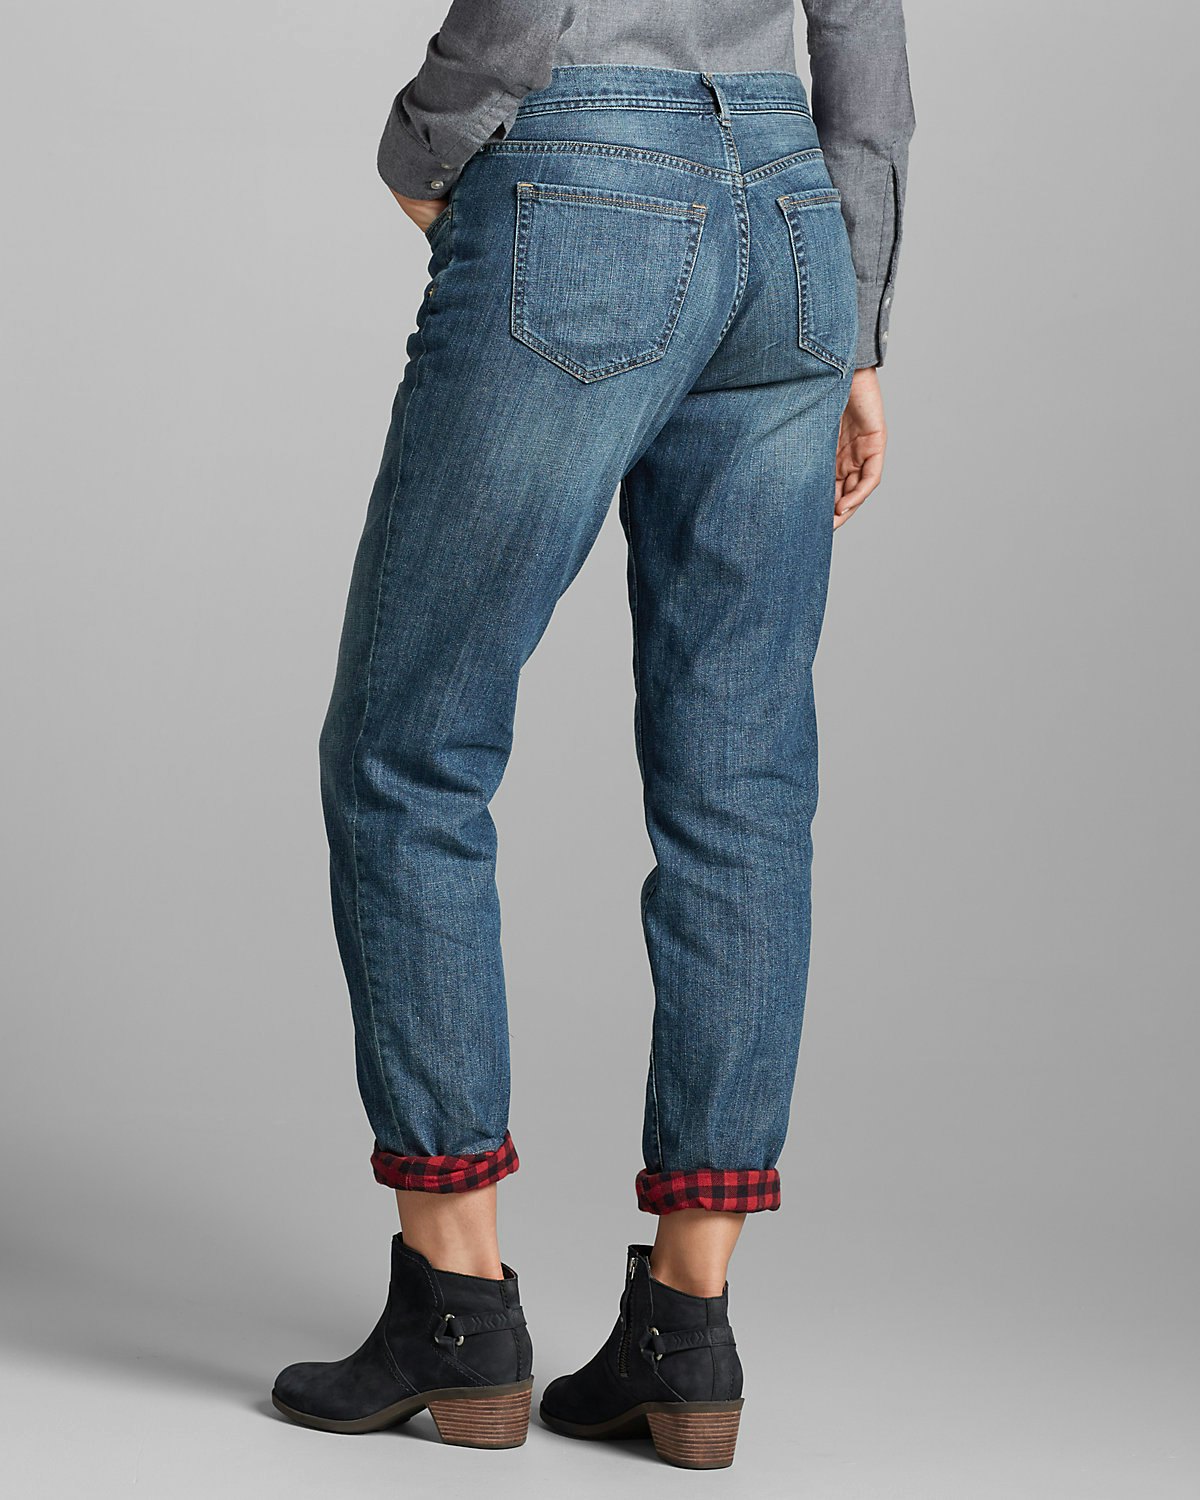 eddie bauer insulated jeans